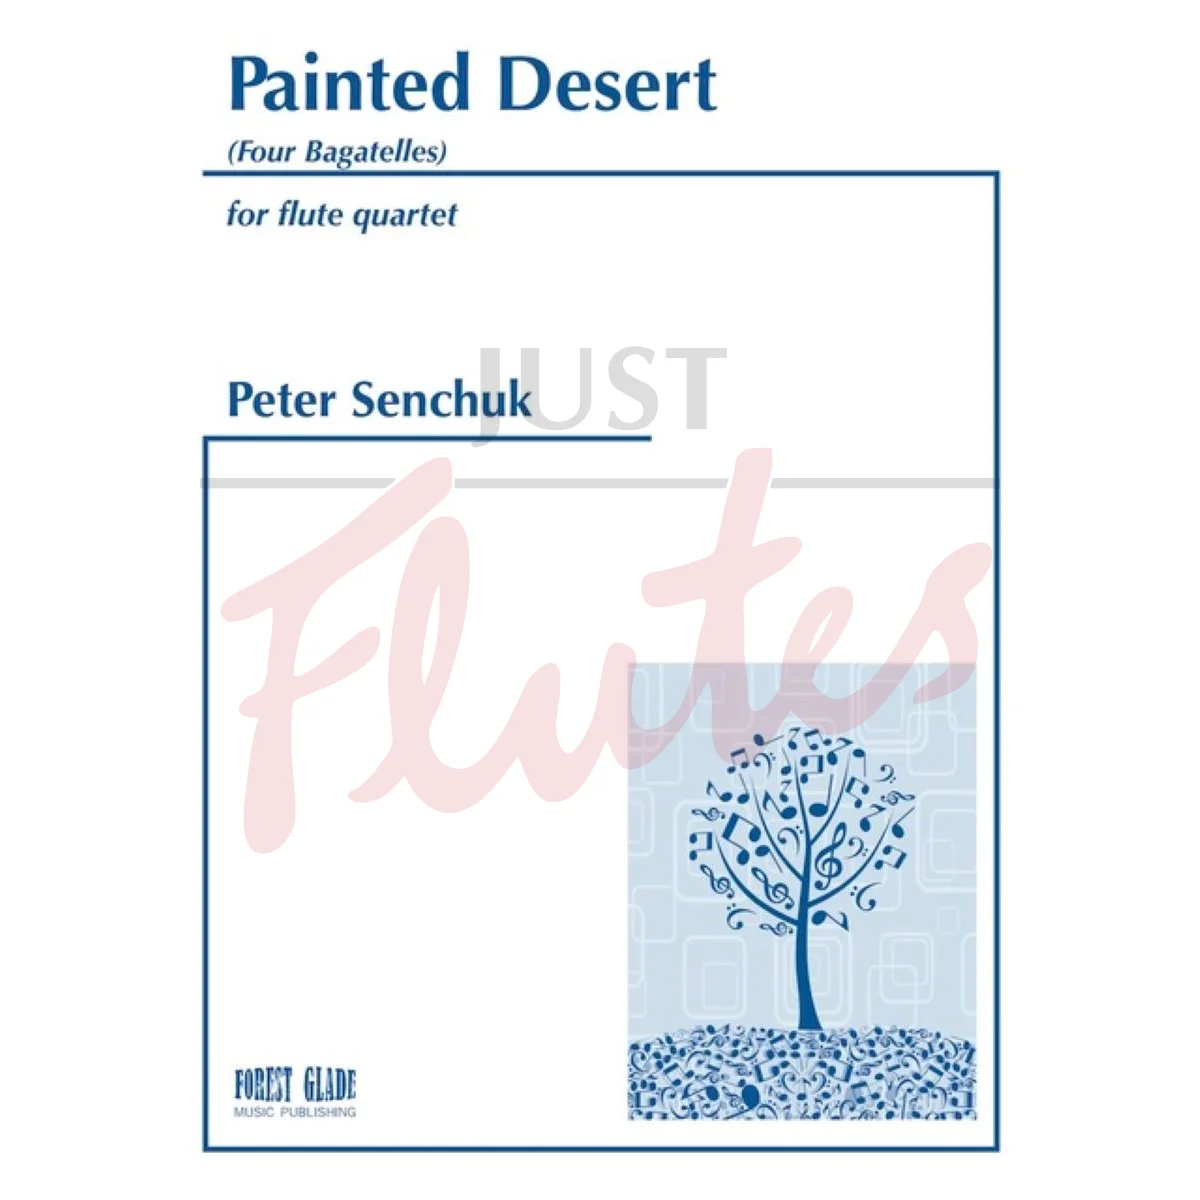 The Painted Desert for Flute Quartet